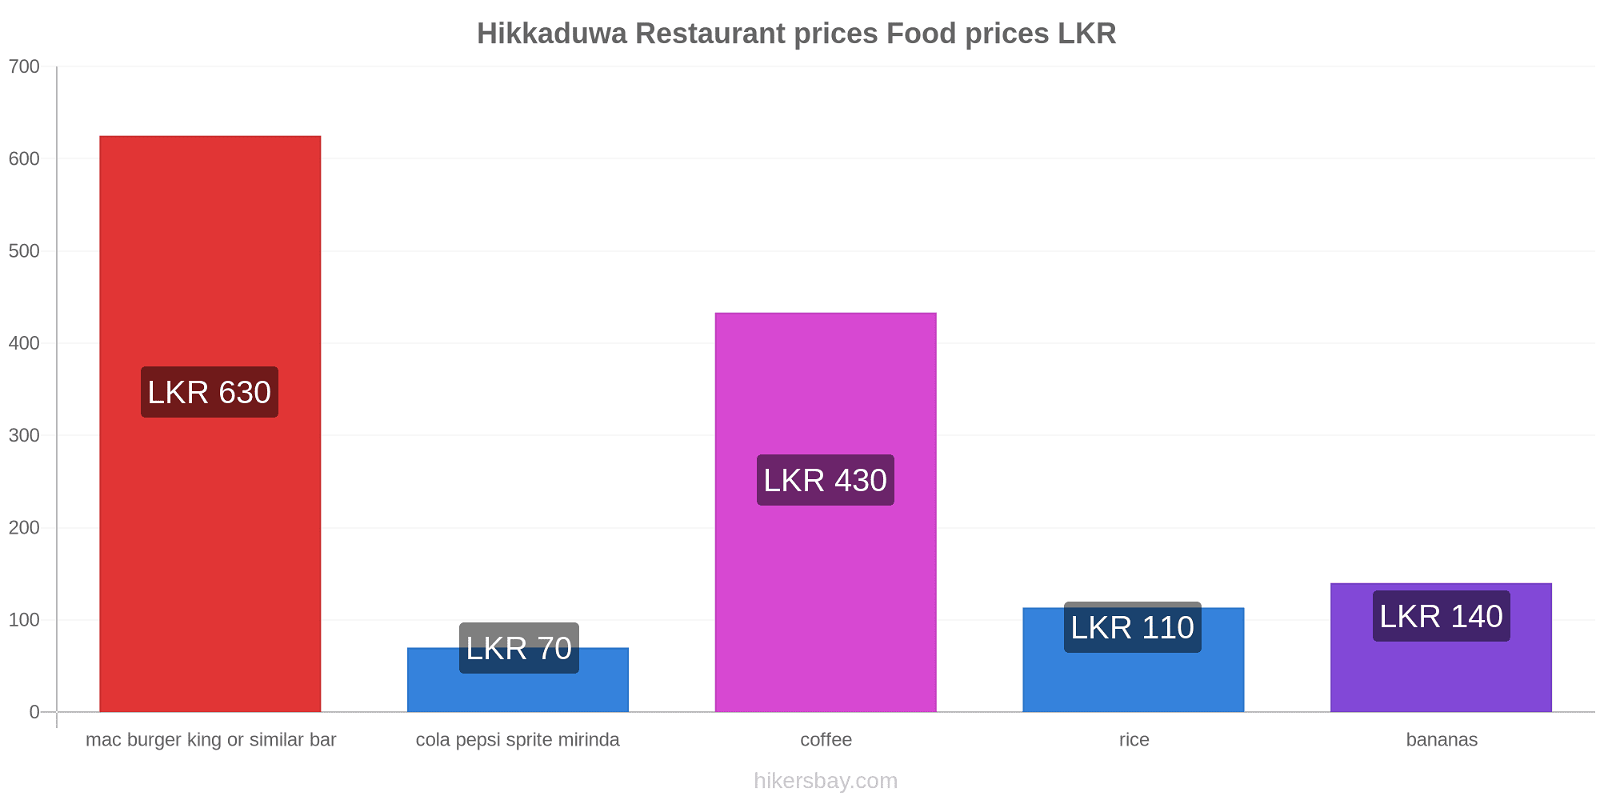 Hikkaduwa price changes hikersbay.com